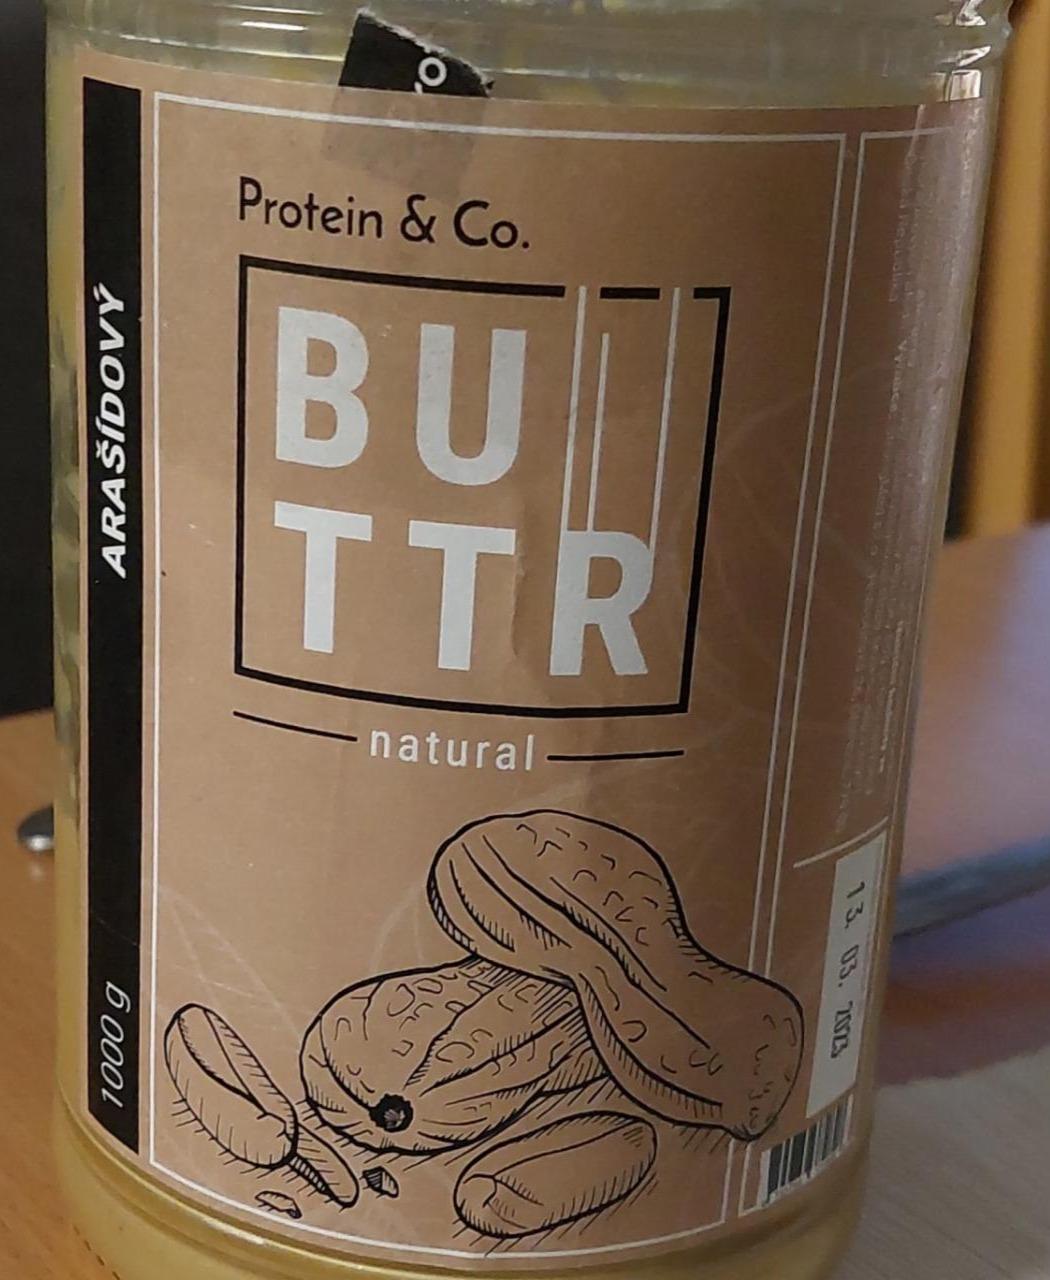 Fotografie - Buttr natural arašídový Protein & Co.